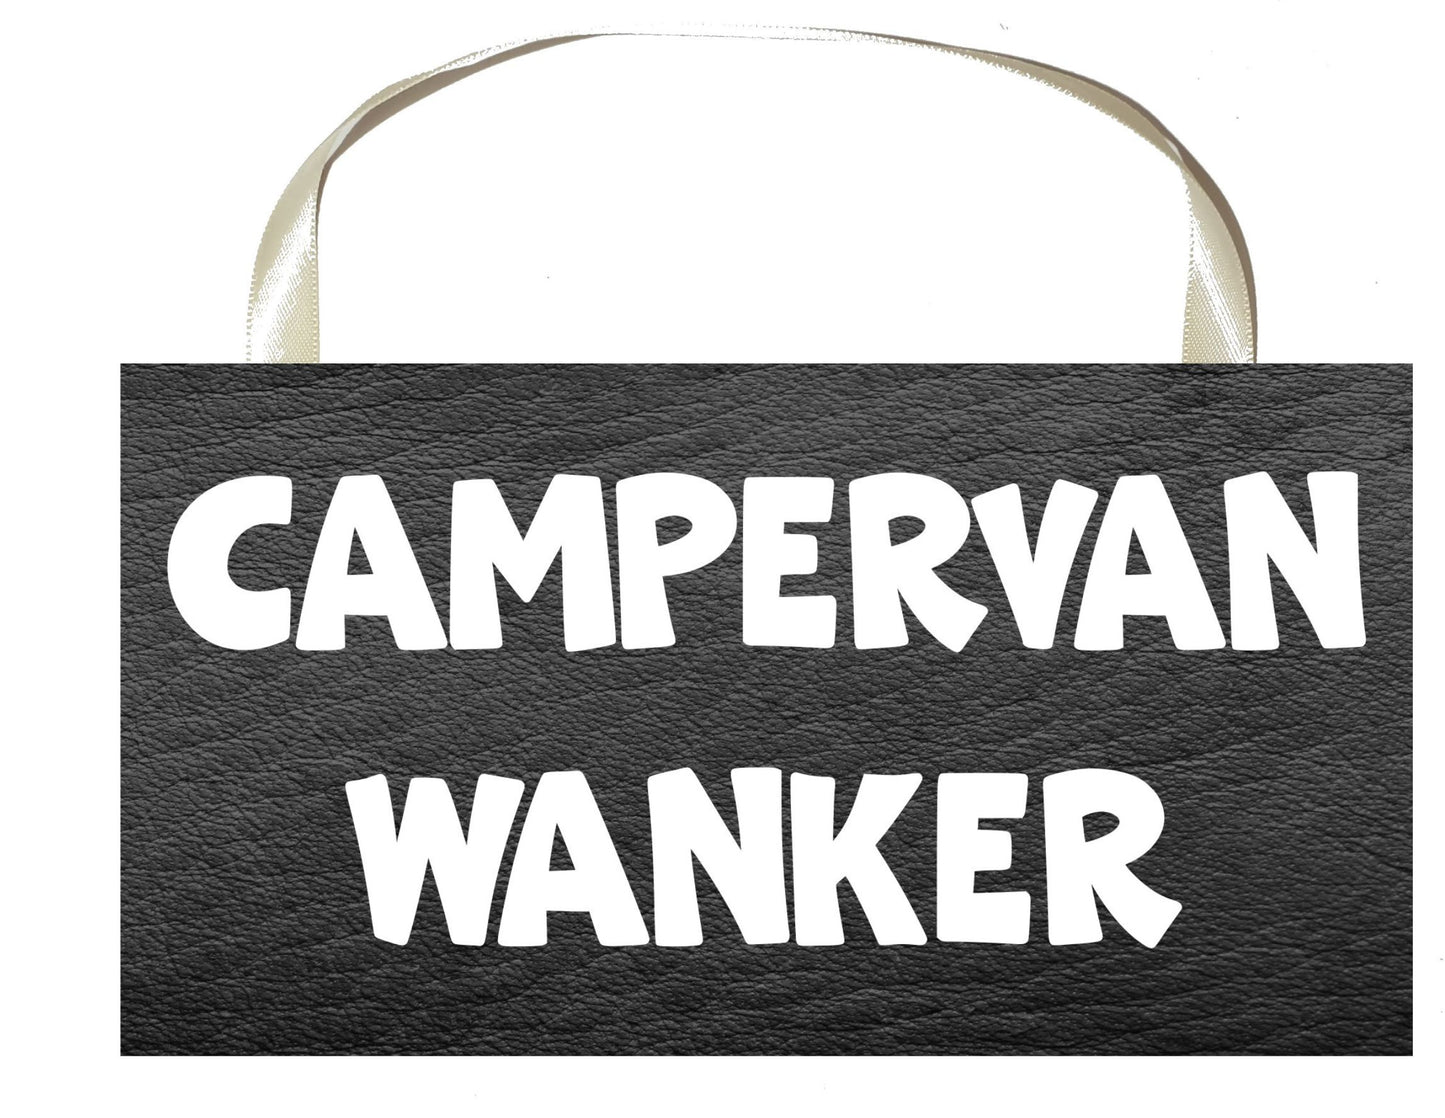 Campervan Plaque / Sign Gift - Campervan Wanker - Rude Cheeky Cute Fun Novelty Present